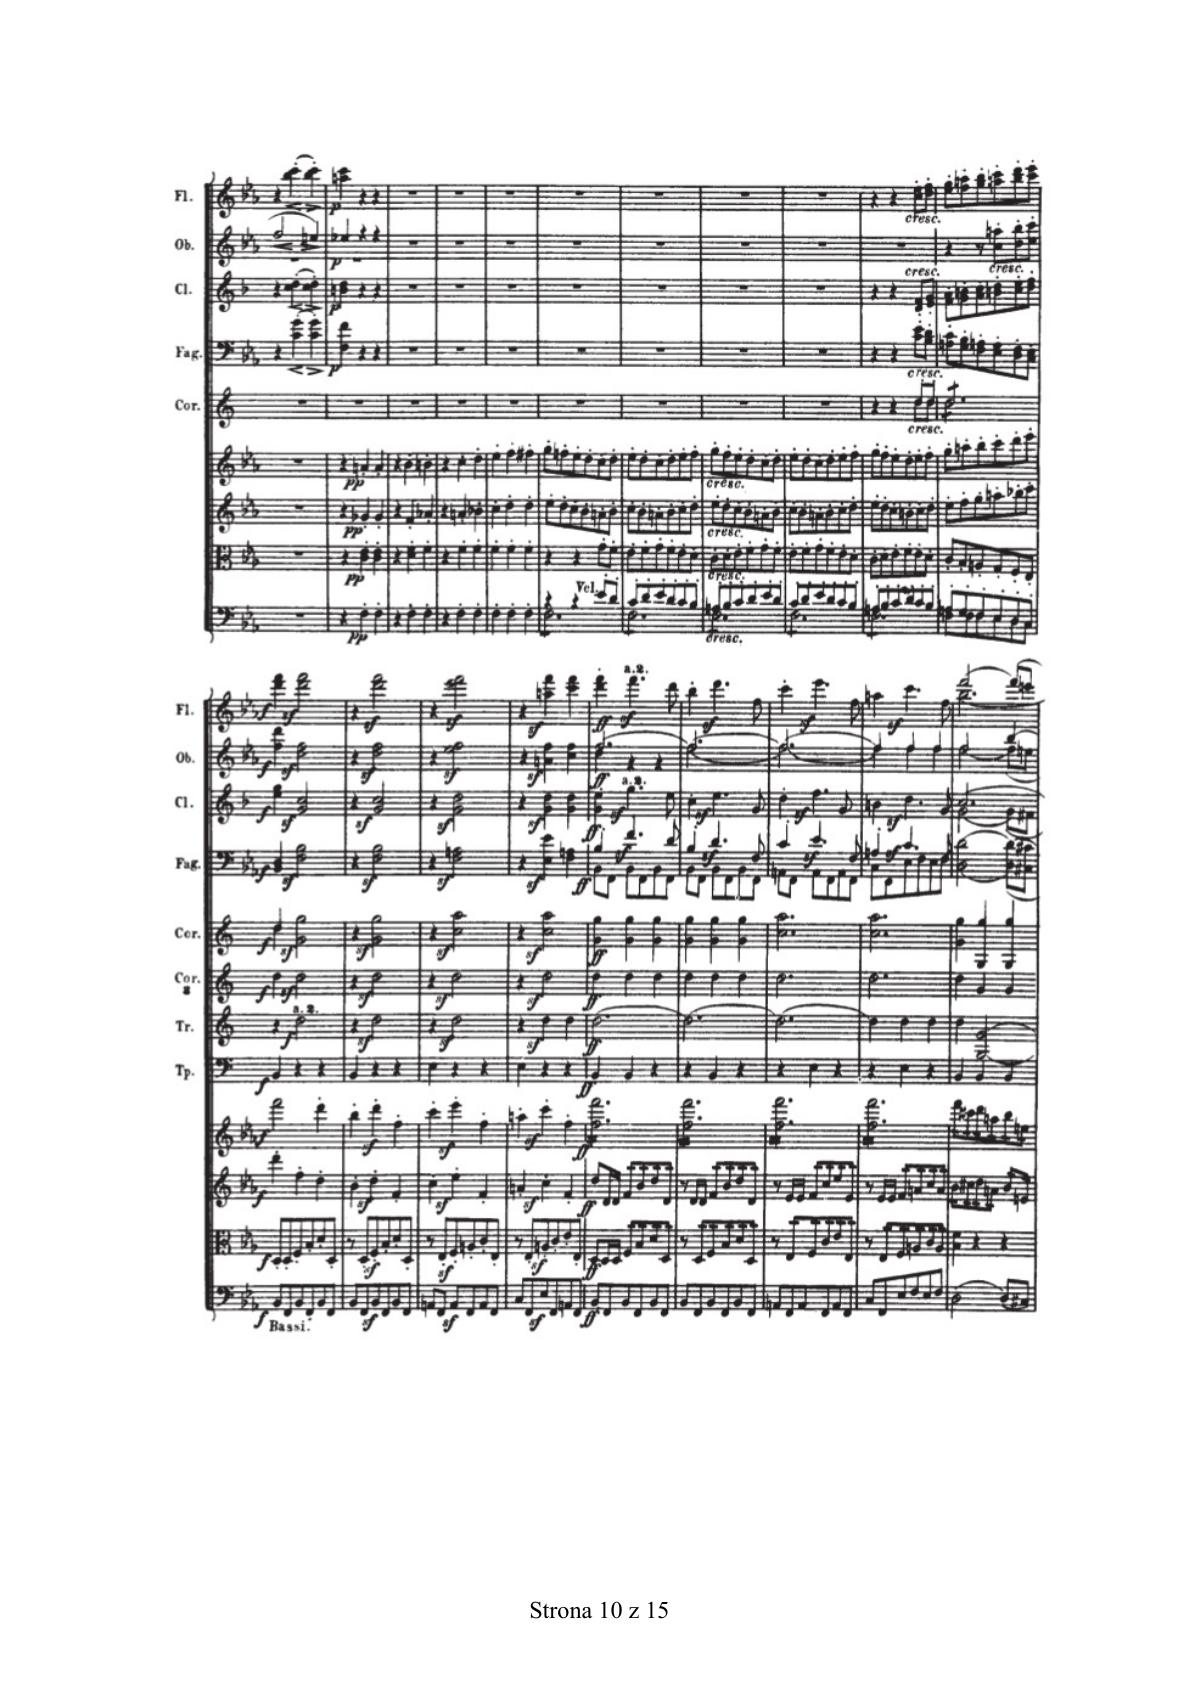 zadanie 17 - Ludwig van Beethoven, III Symfonia Es-dur op. 55, cz. I - fragment-6